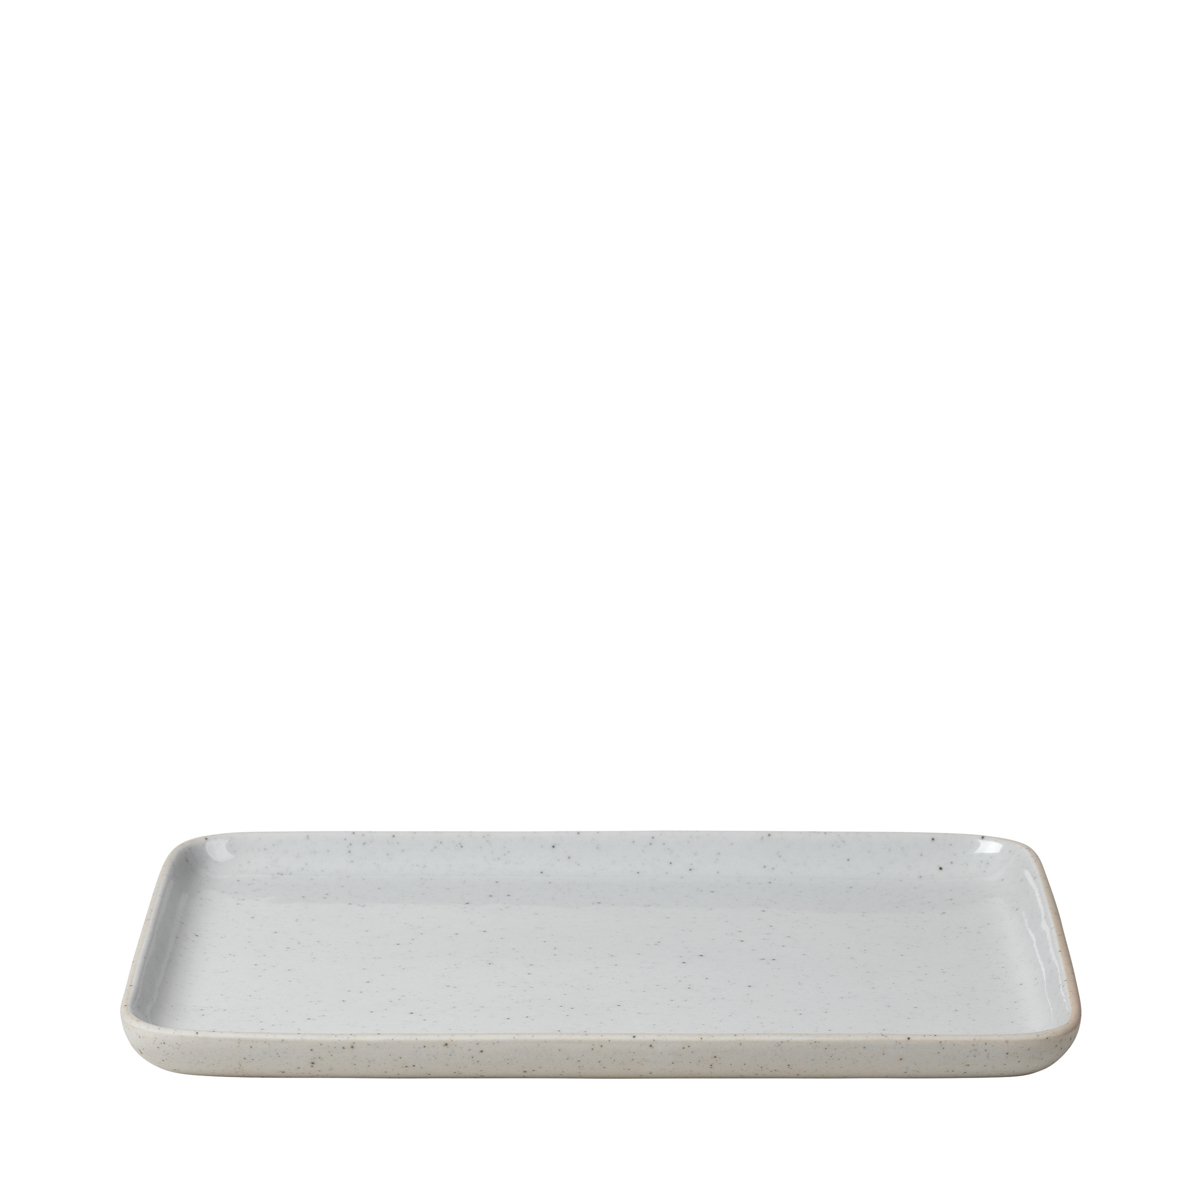 Snack Teller -SABLO- Cloud Size L. Material: Keramik. Von Blomus.